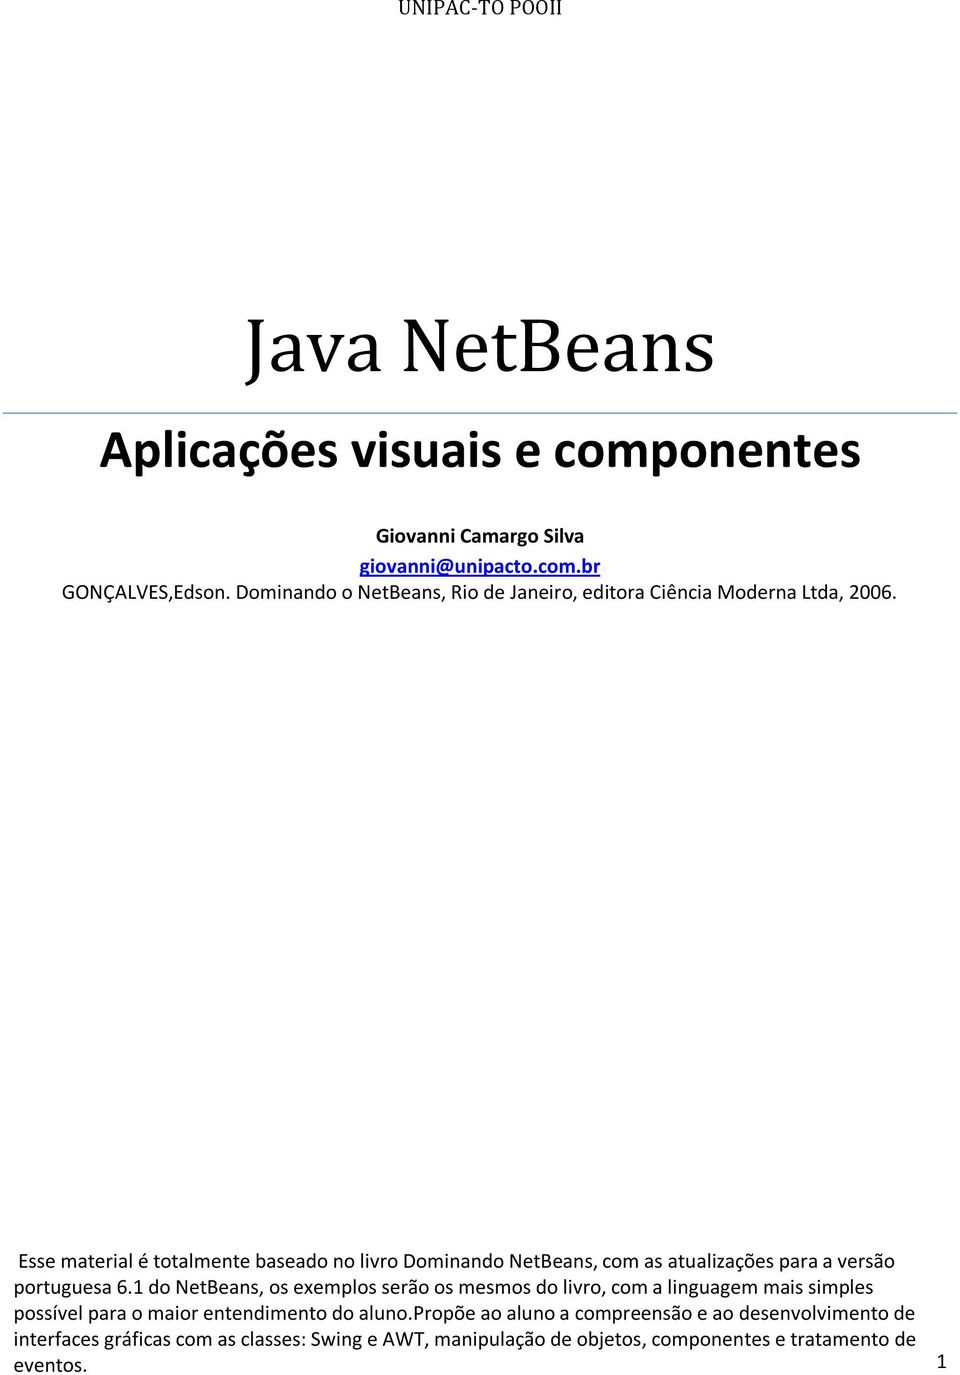 Esse material é totalmente baseado no livro Dominando NetBeans, com as atualizações para a versão portuguesa 6.